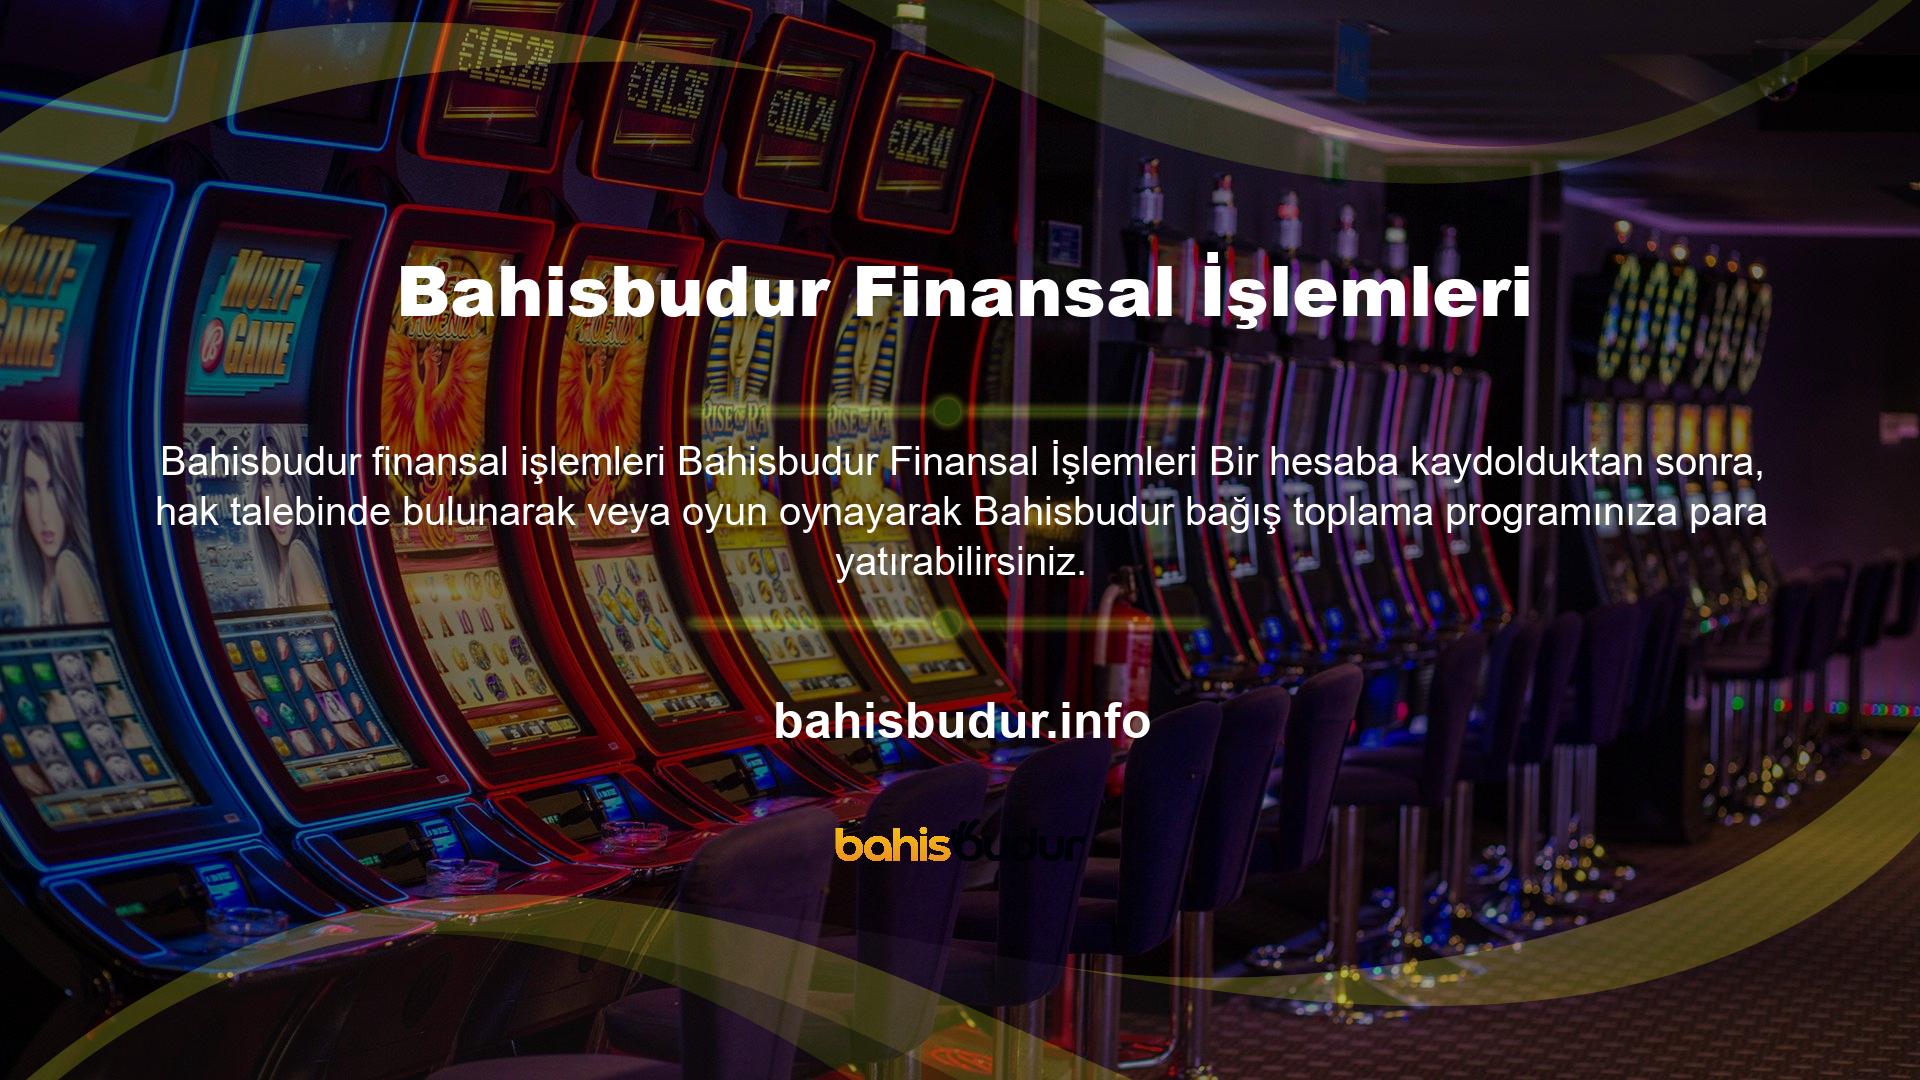 Kesintisiz hizmet anlayışı kullanan Bahisbudur web sitesindeki müşteri hizmetleri bireysel olarak etkindir